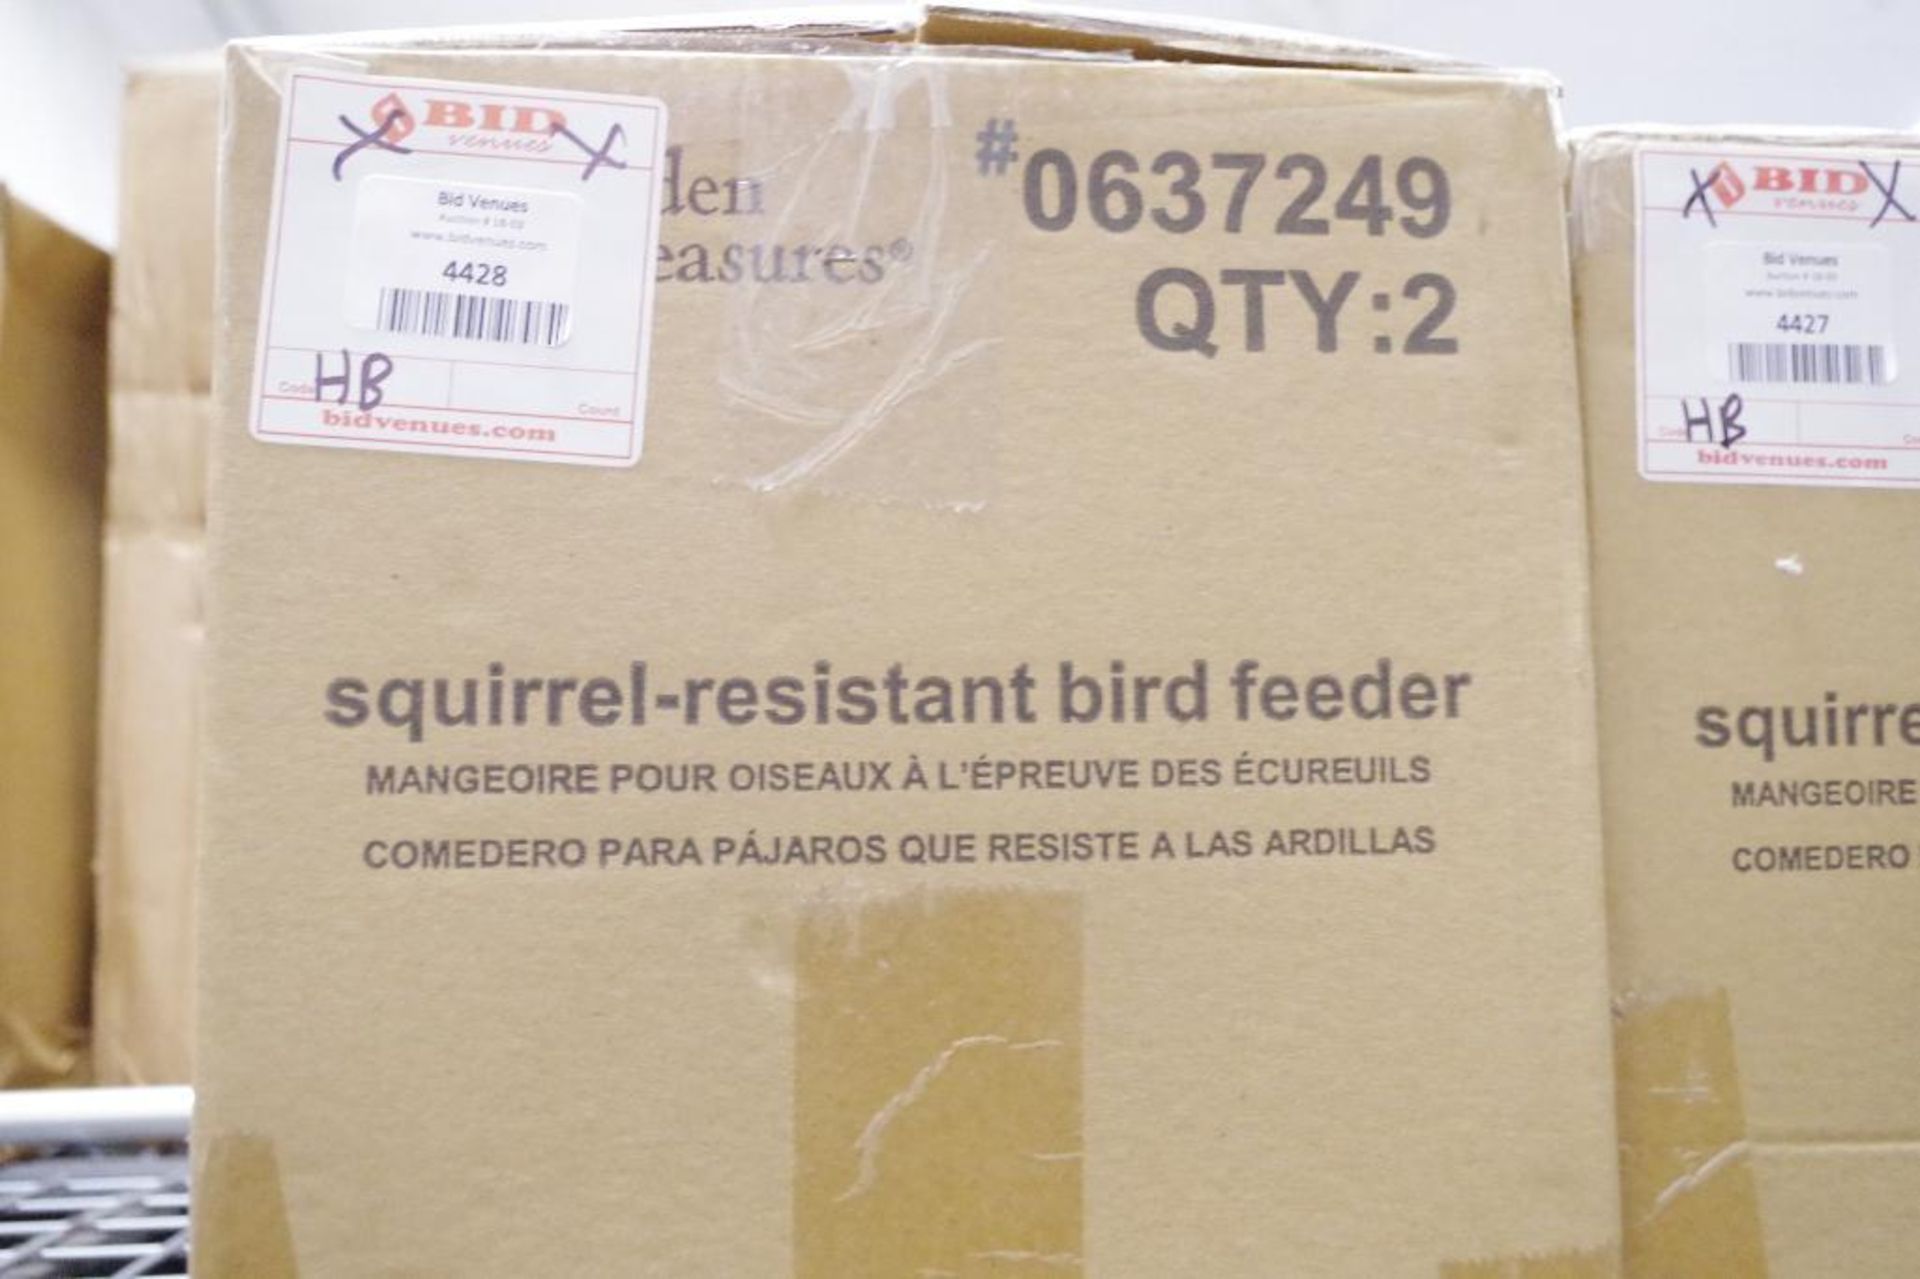 [2] NEW GARDEN TREASURES Squirrel-Resistant Bird Feeders M/N 0637249 - Image 2 of 3